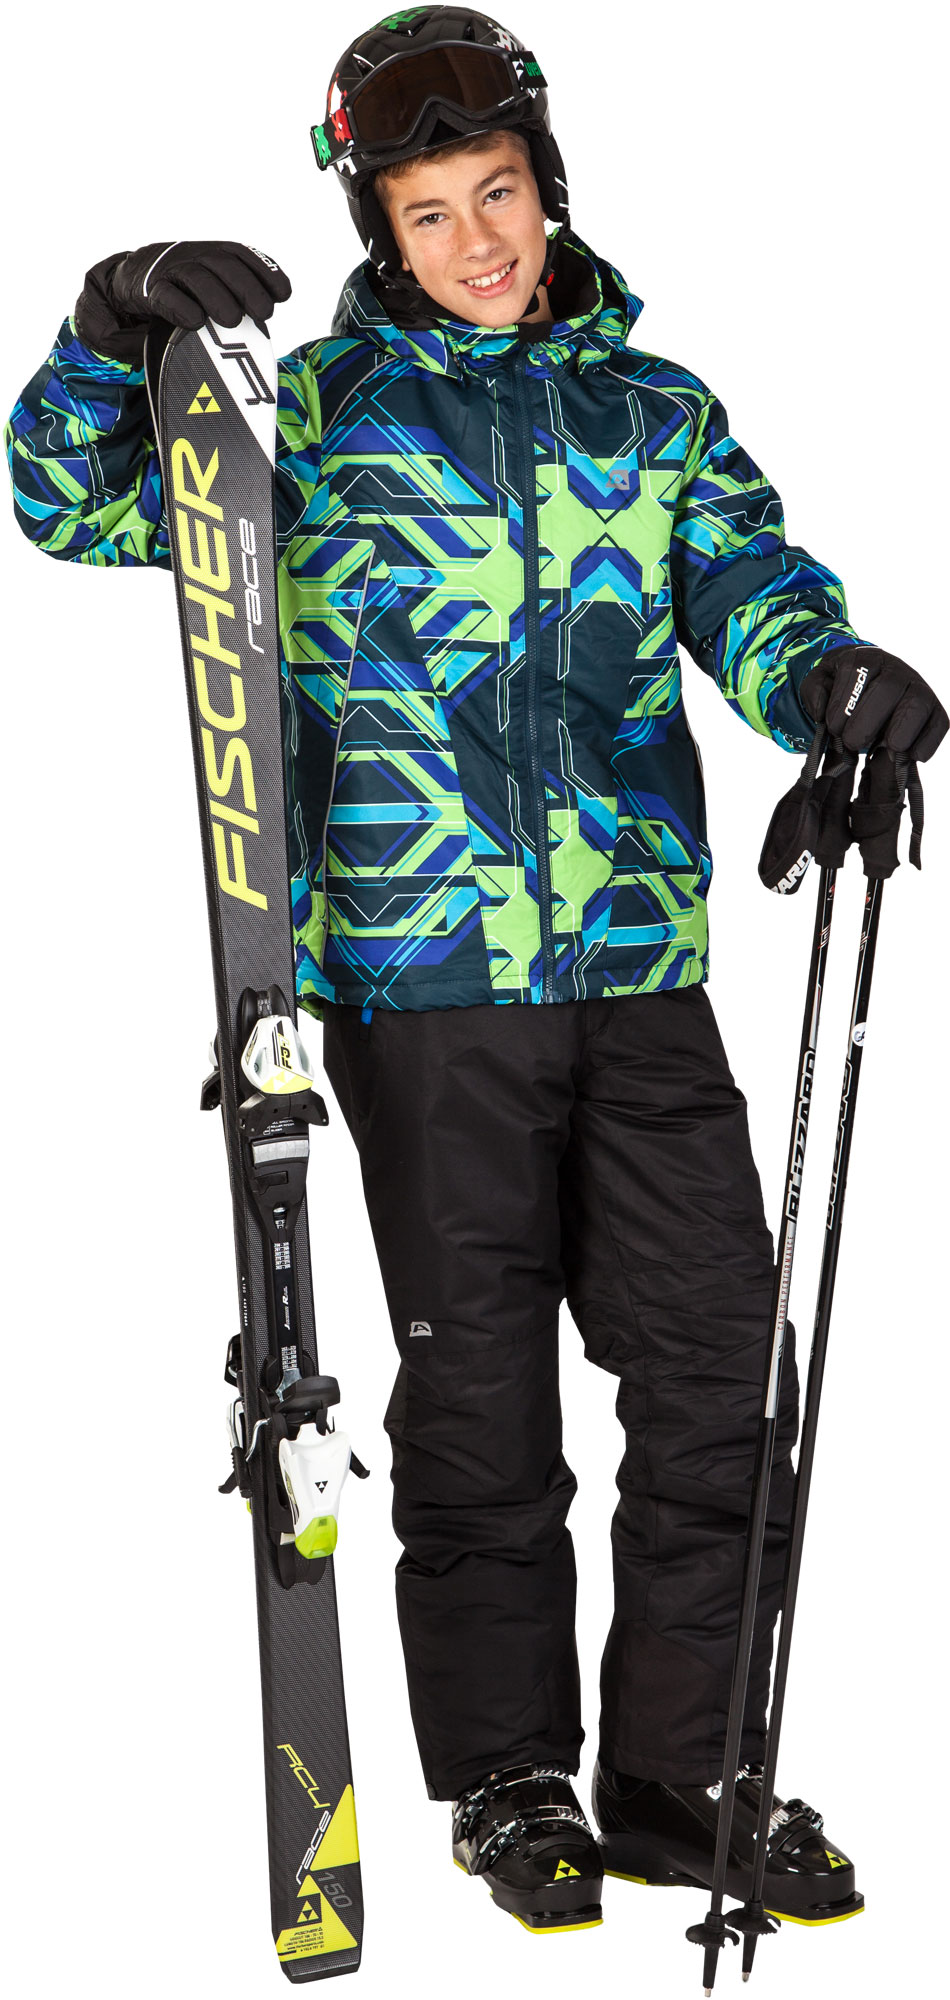 Jr. Downhill Skis